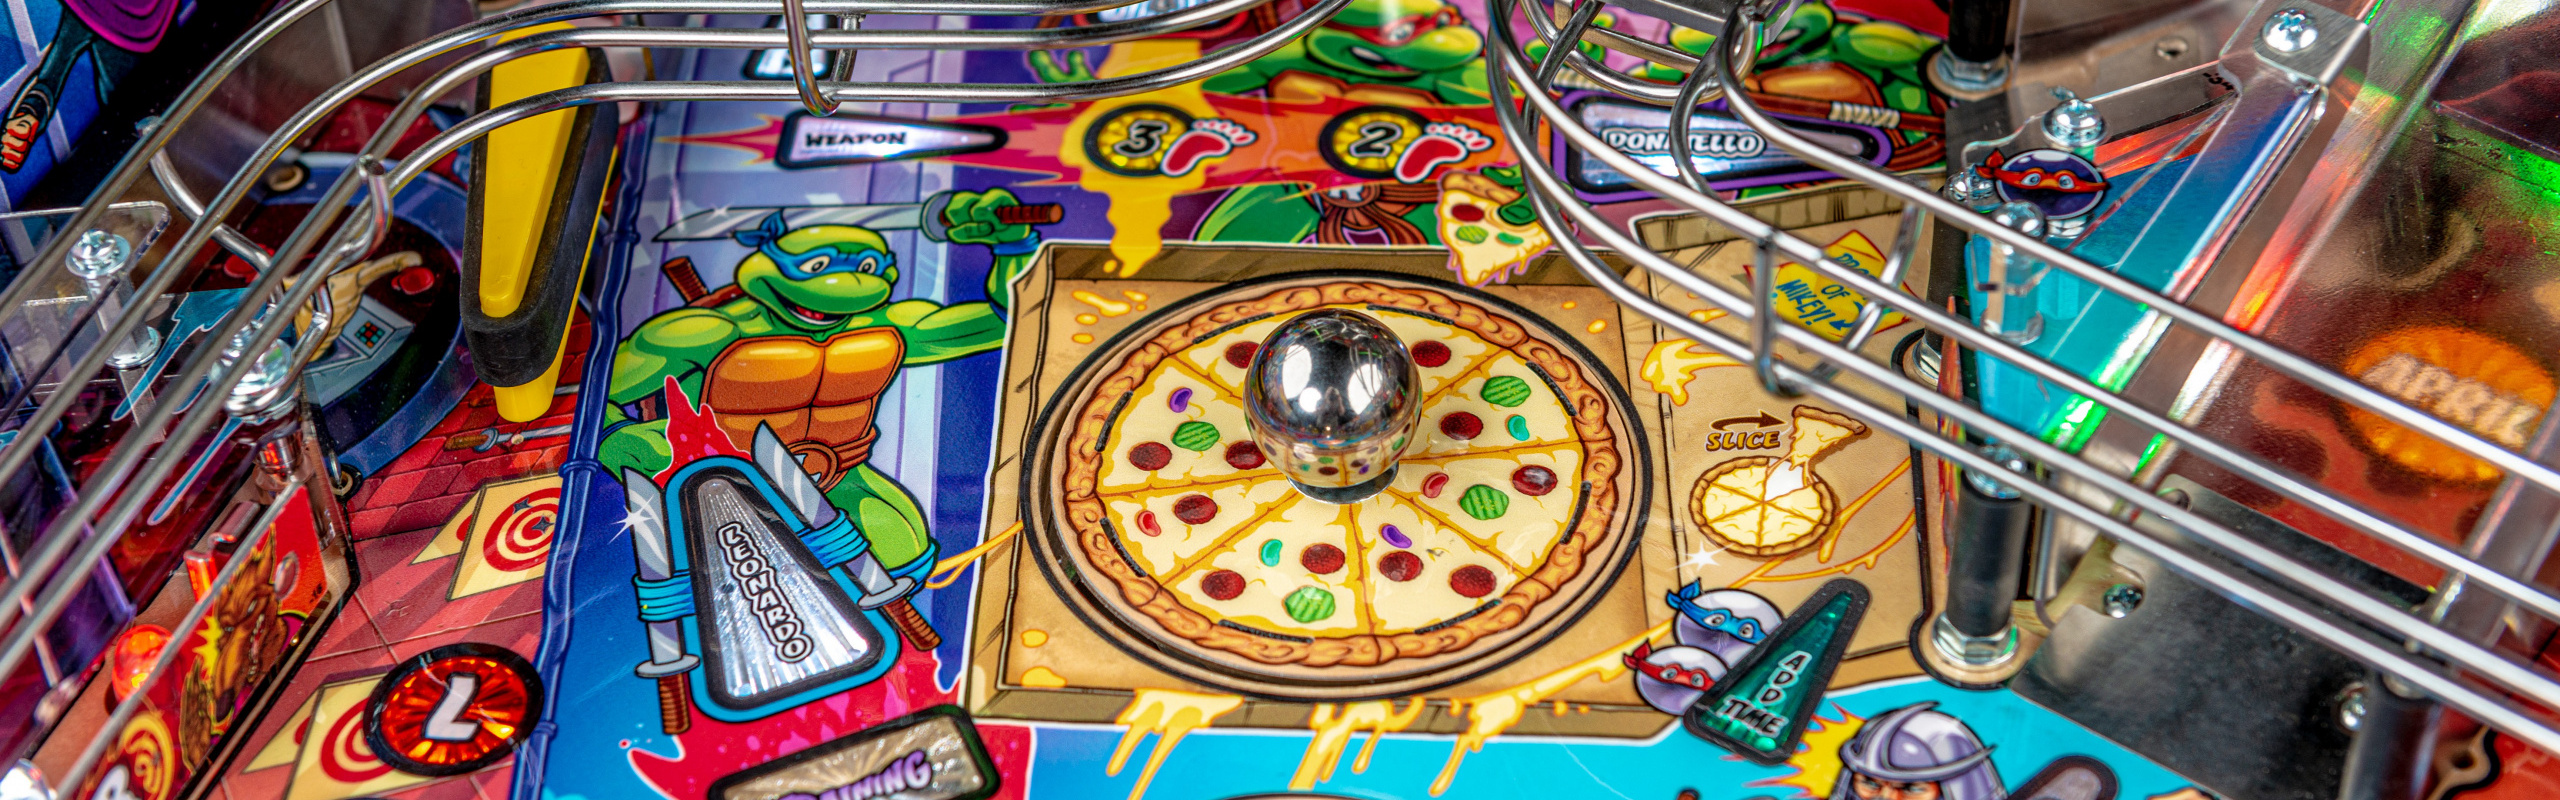 Stern Pinball Announces New Teenage Mutant Ninja Turtles Pinball Machines